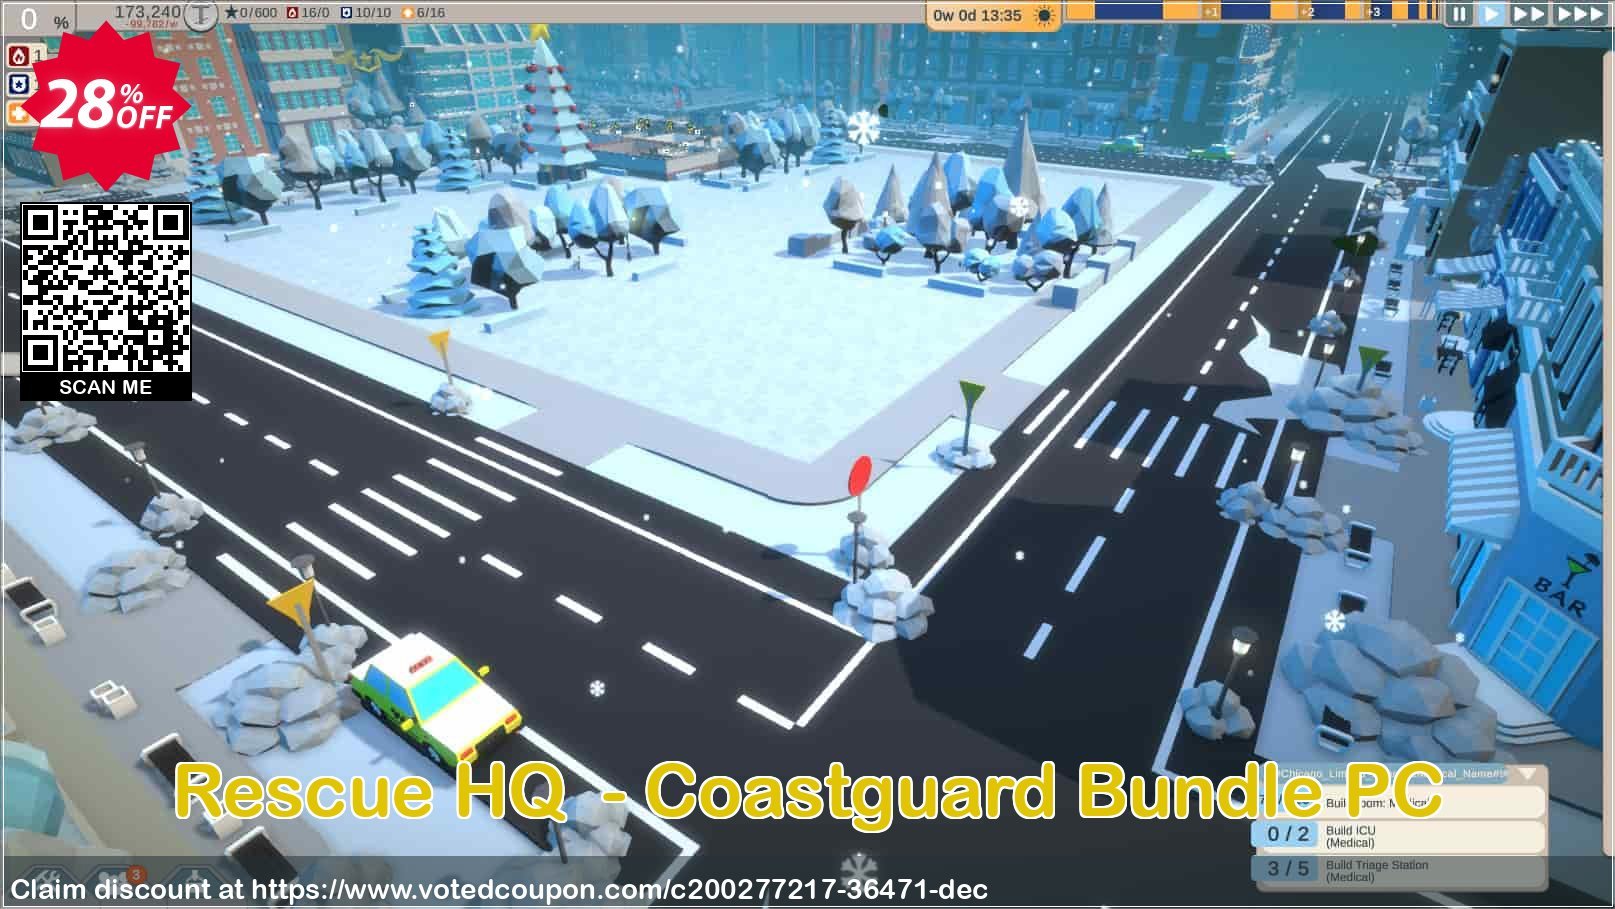 Rescue HQ  - Coastguard Bundle PC Coupon Code Apr 2024, 28% OFF - VotedCoupon